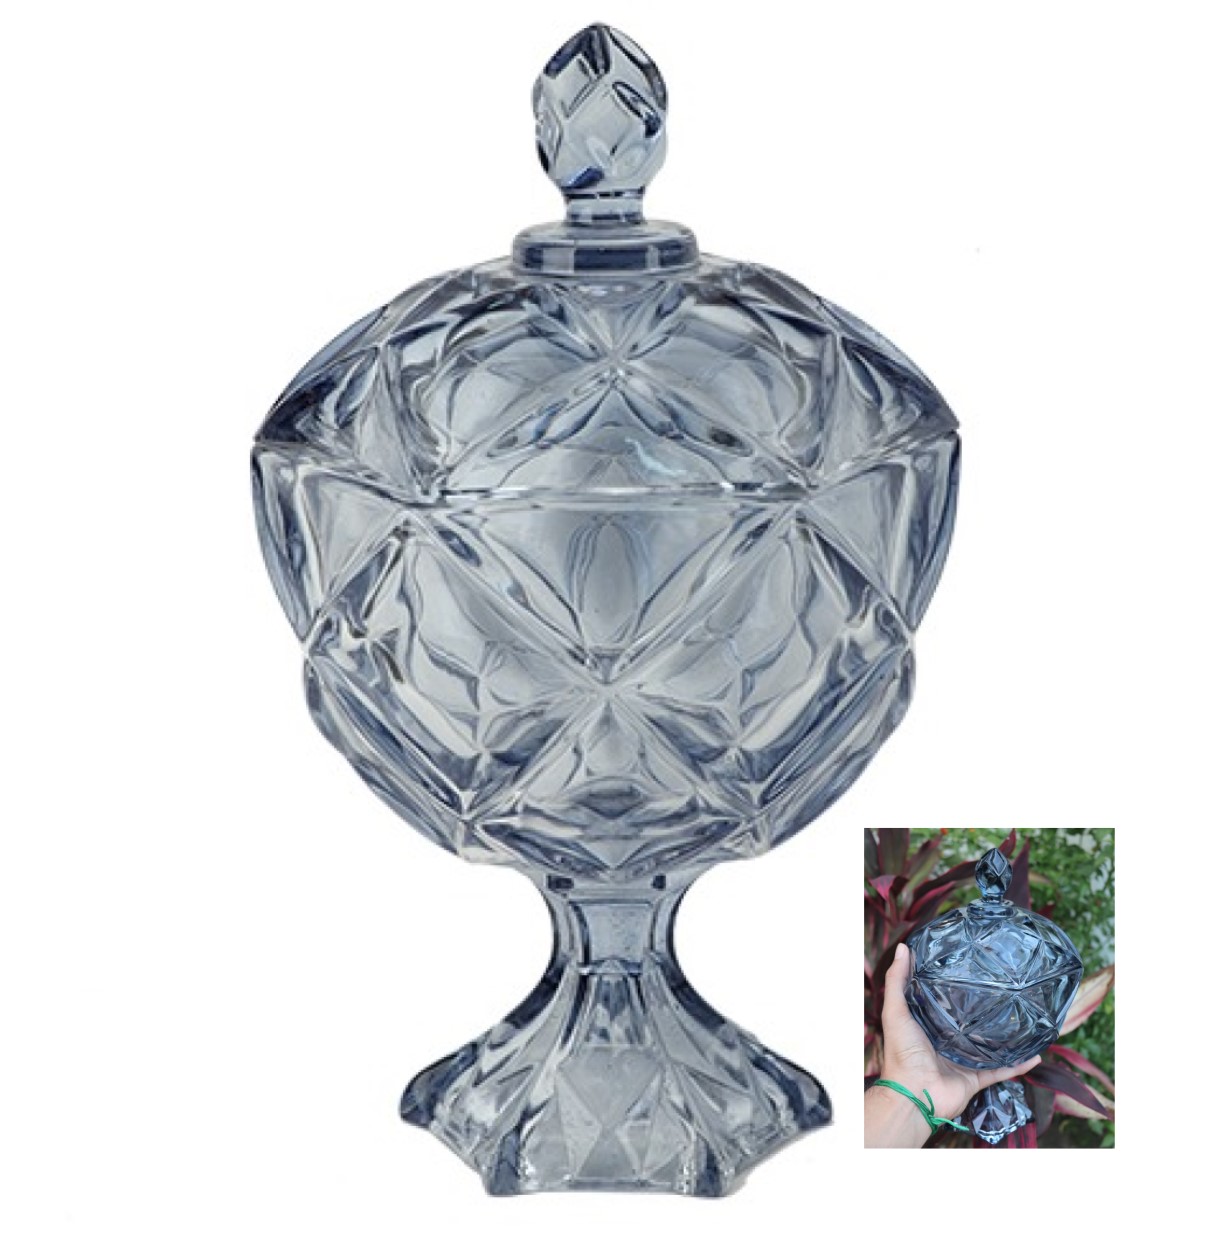 Bomboniere de vidro cristal potiche bruxelas alta A27x D17 enfeite vidro vaso decorativo porta balas baleiro full25865